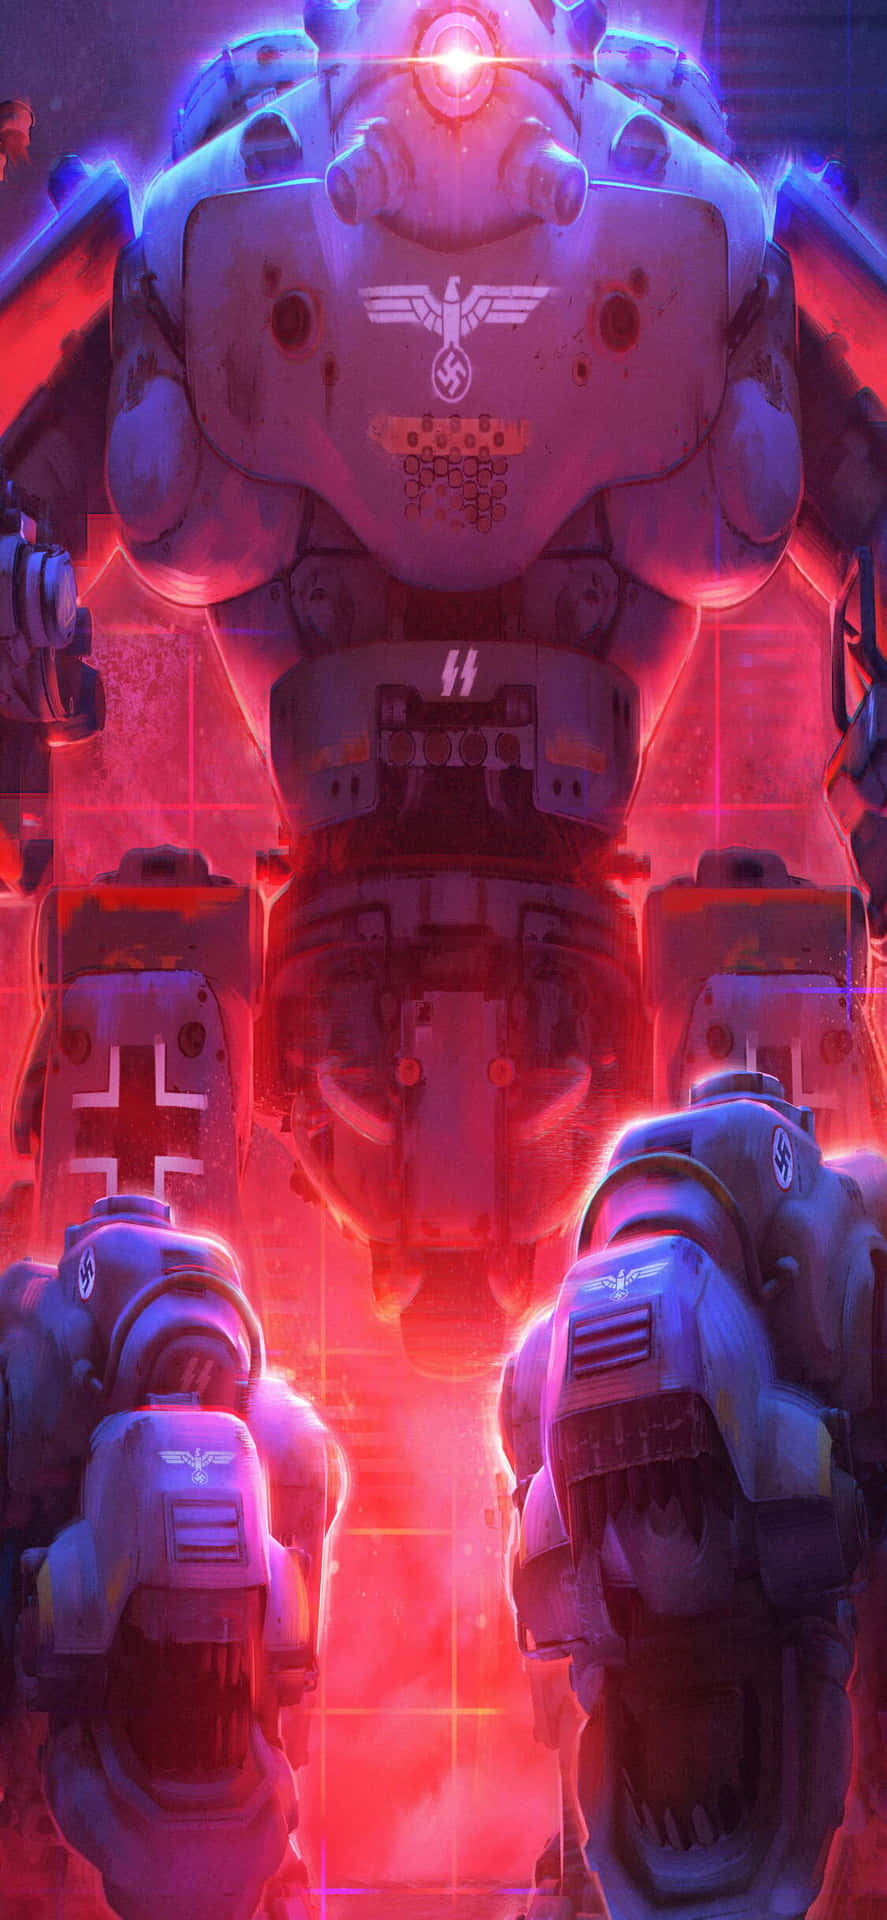 Ungruppo Di Robot Di Fronte A Una Luce Rossa